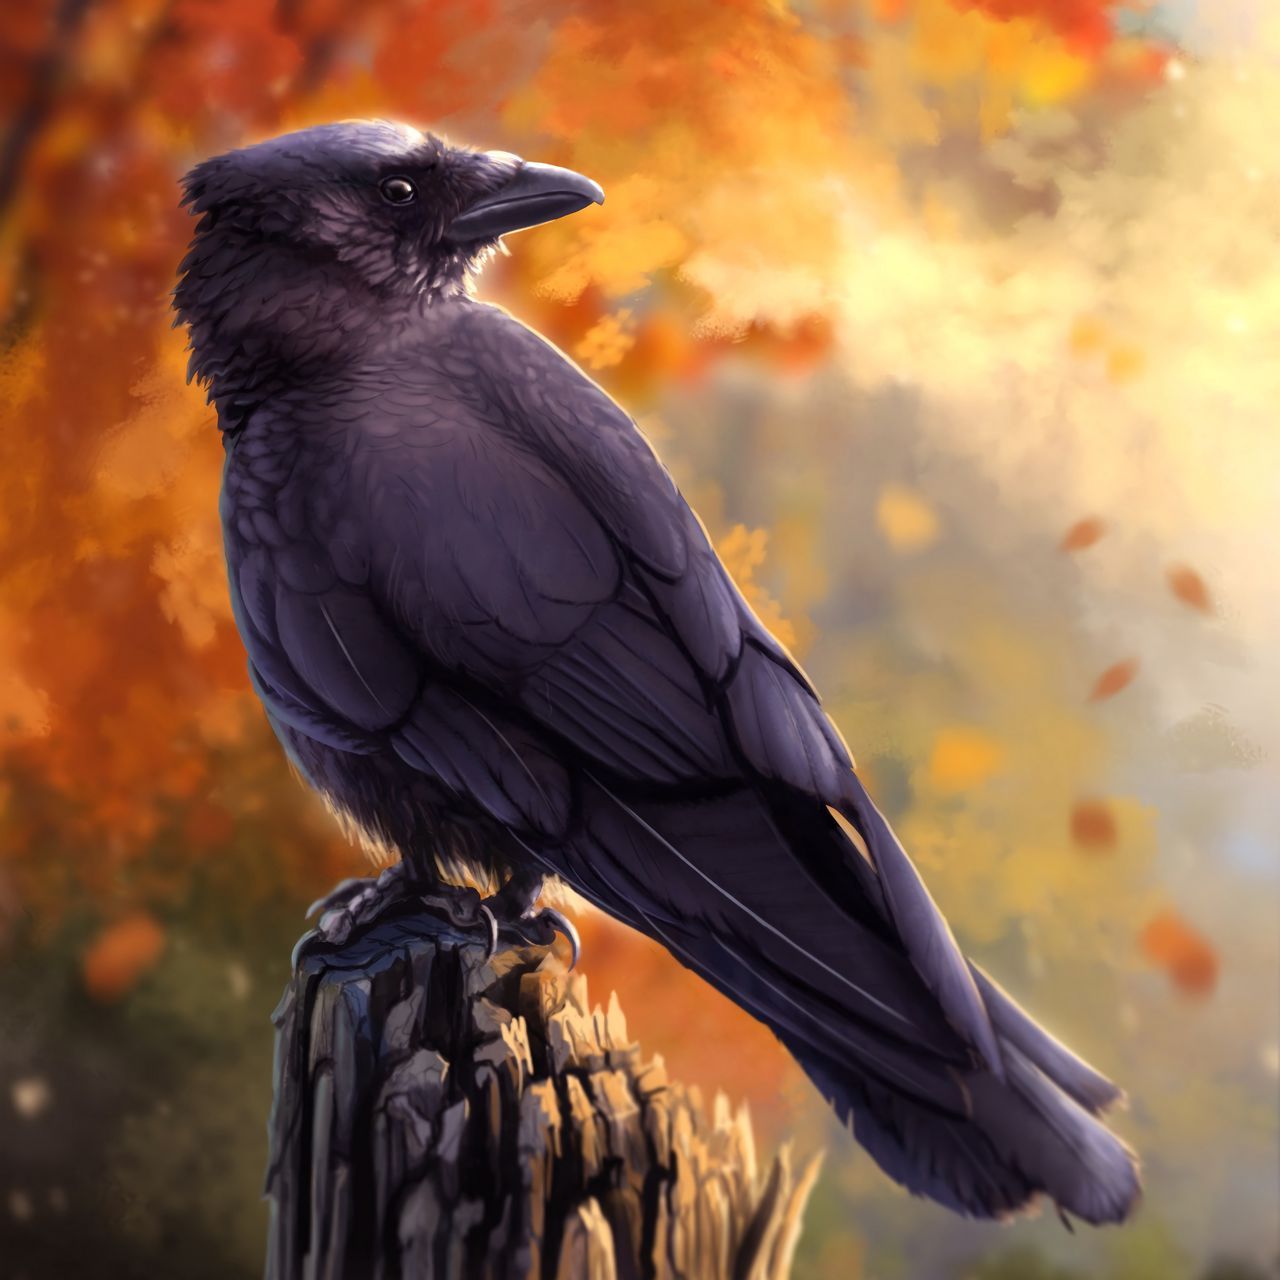 Download wallpaper 1280x1280 raven, bird, art, black, autumn ipad, ipad ipad mini for parallax HD background